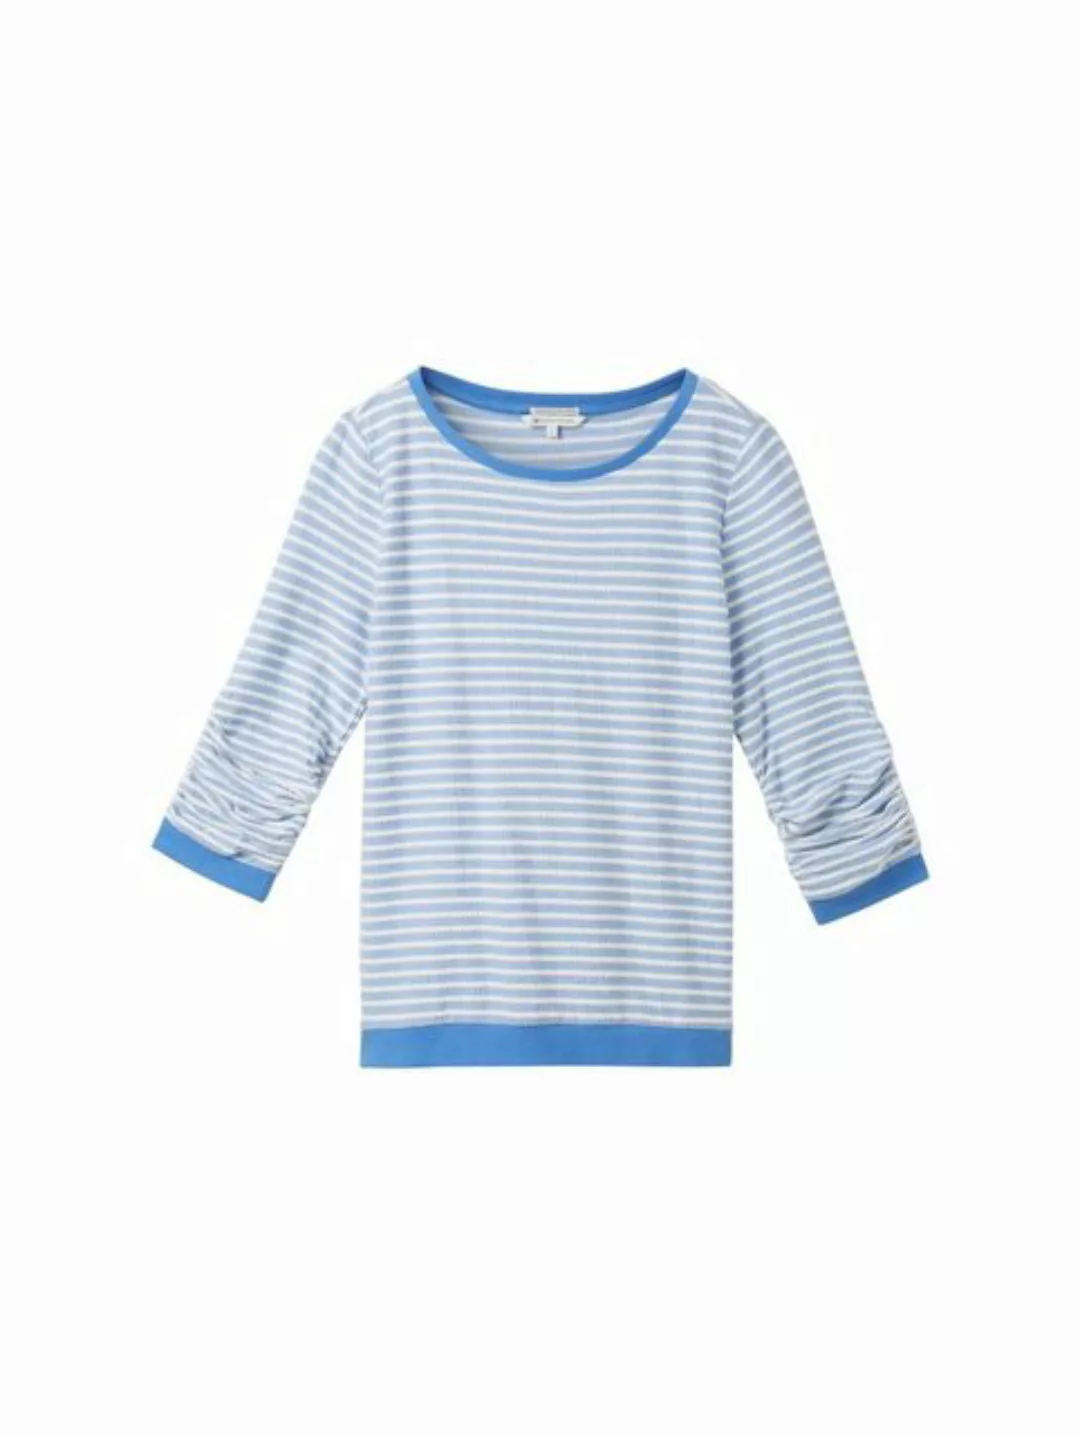 TOM TAILOR Denim T-Shirt striped jacquard sweatshirt, midblue white structu günstig online kaufen